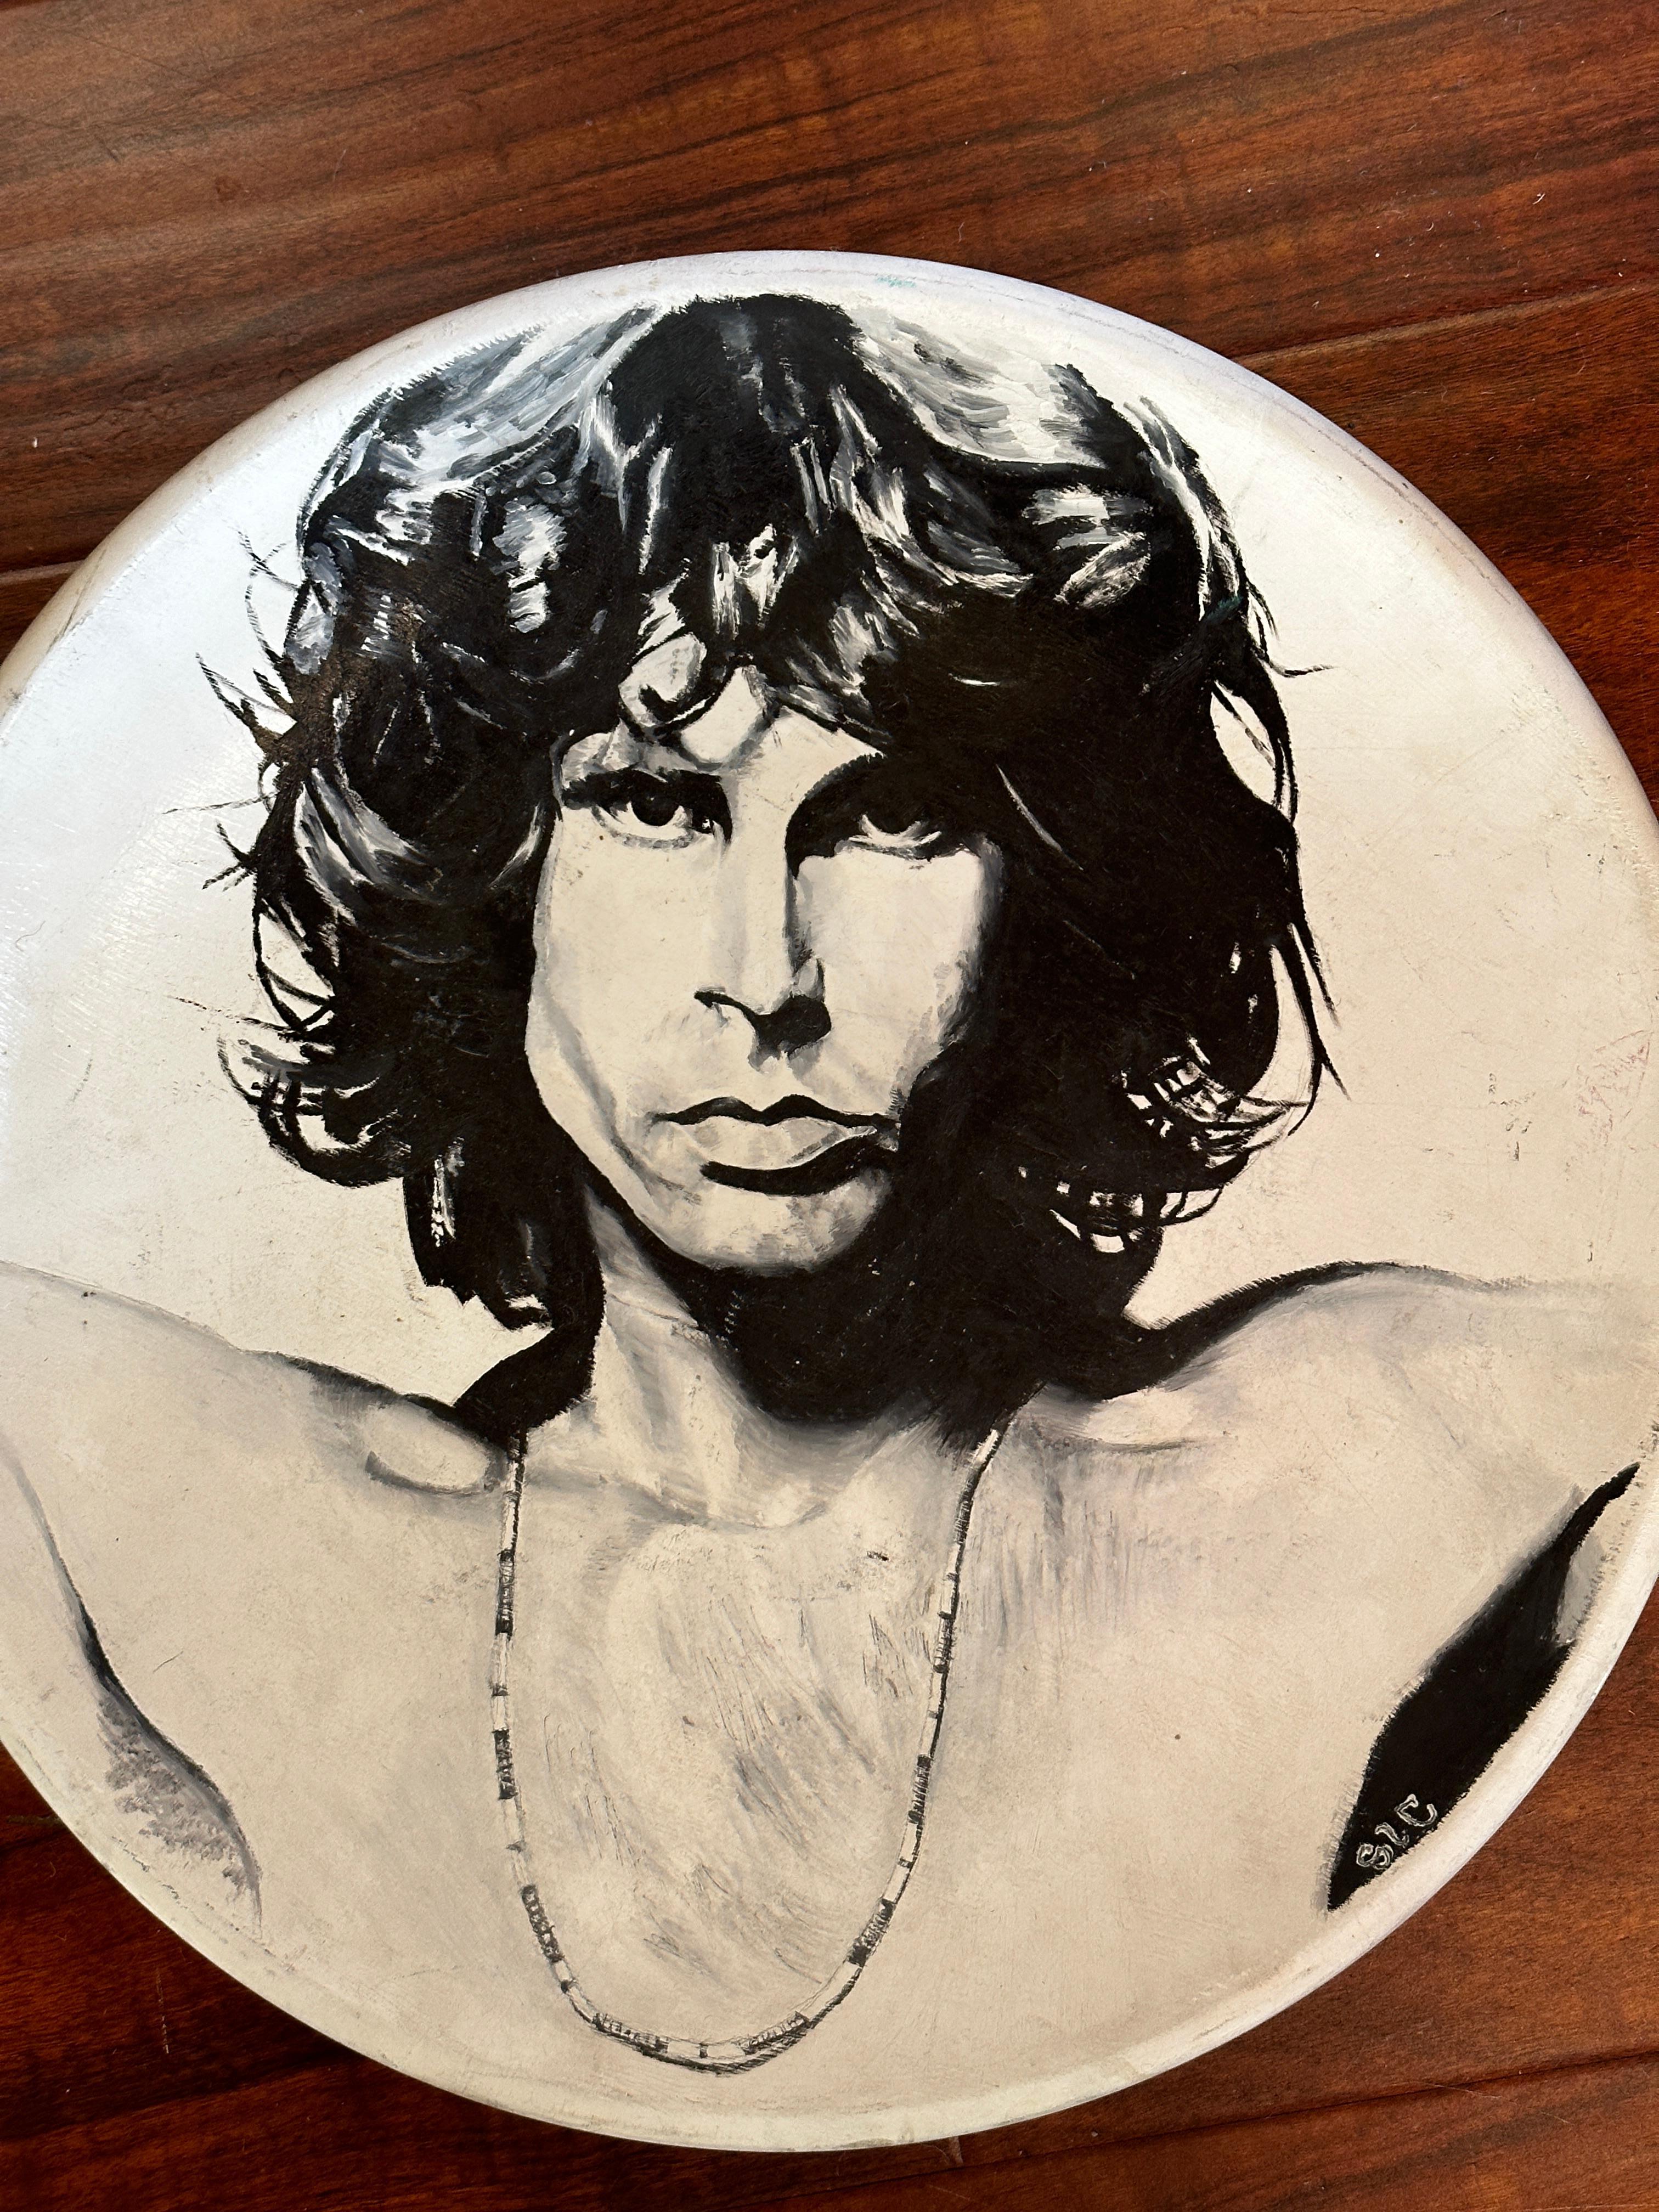 Cette assiette en céramique peinte à l'acrylique présente une reproduction de l'un des portraits emblématiques de Jim Morrison réalisés par le photographe Joel Brodsky. L'artiste représente les traits frappants de Morrison fidèles à la photo